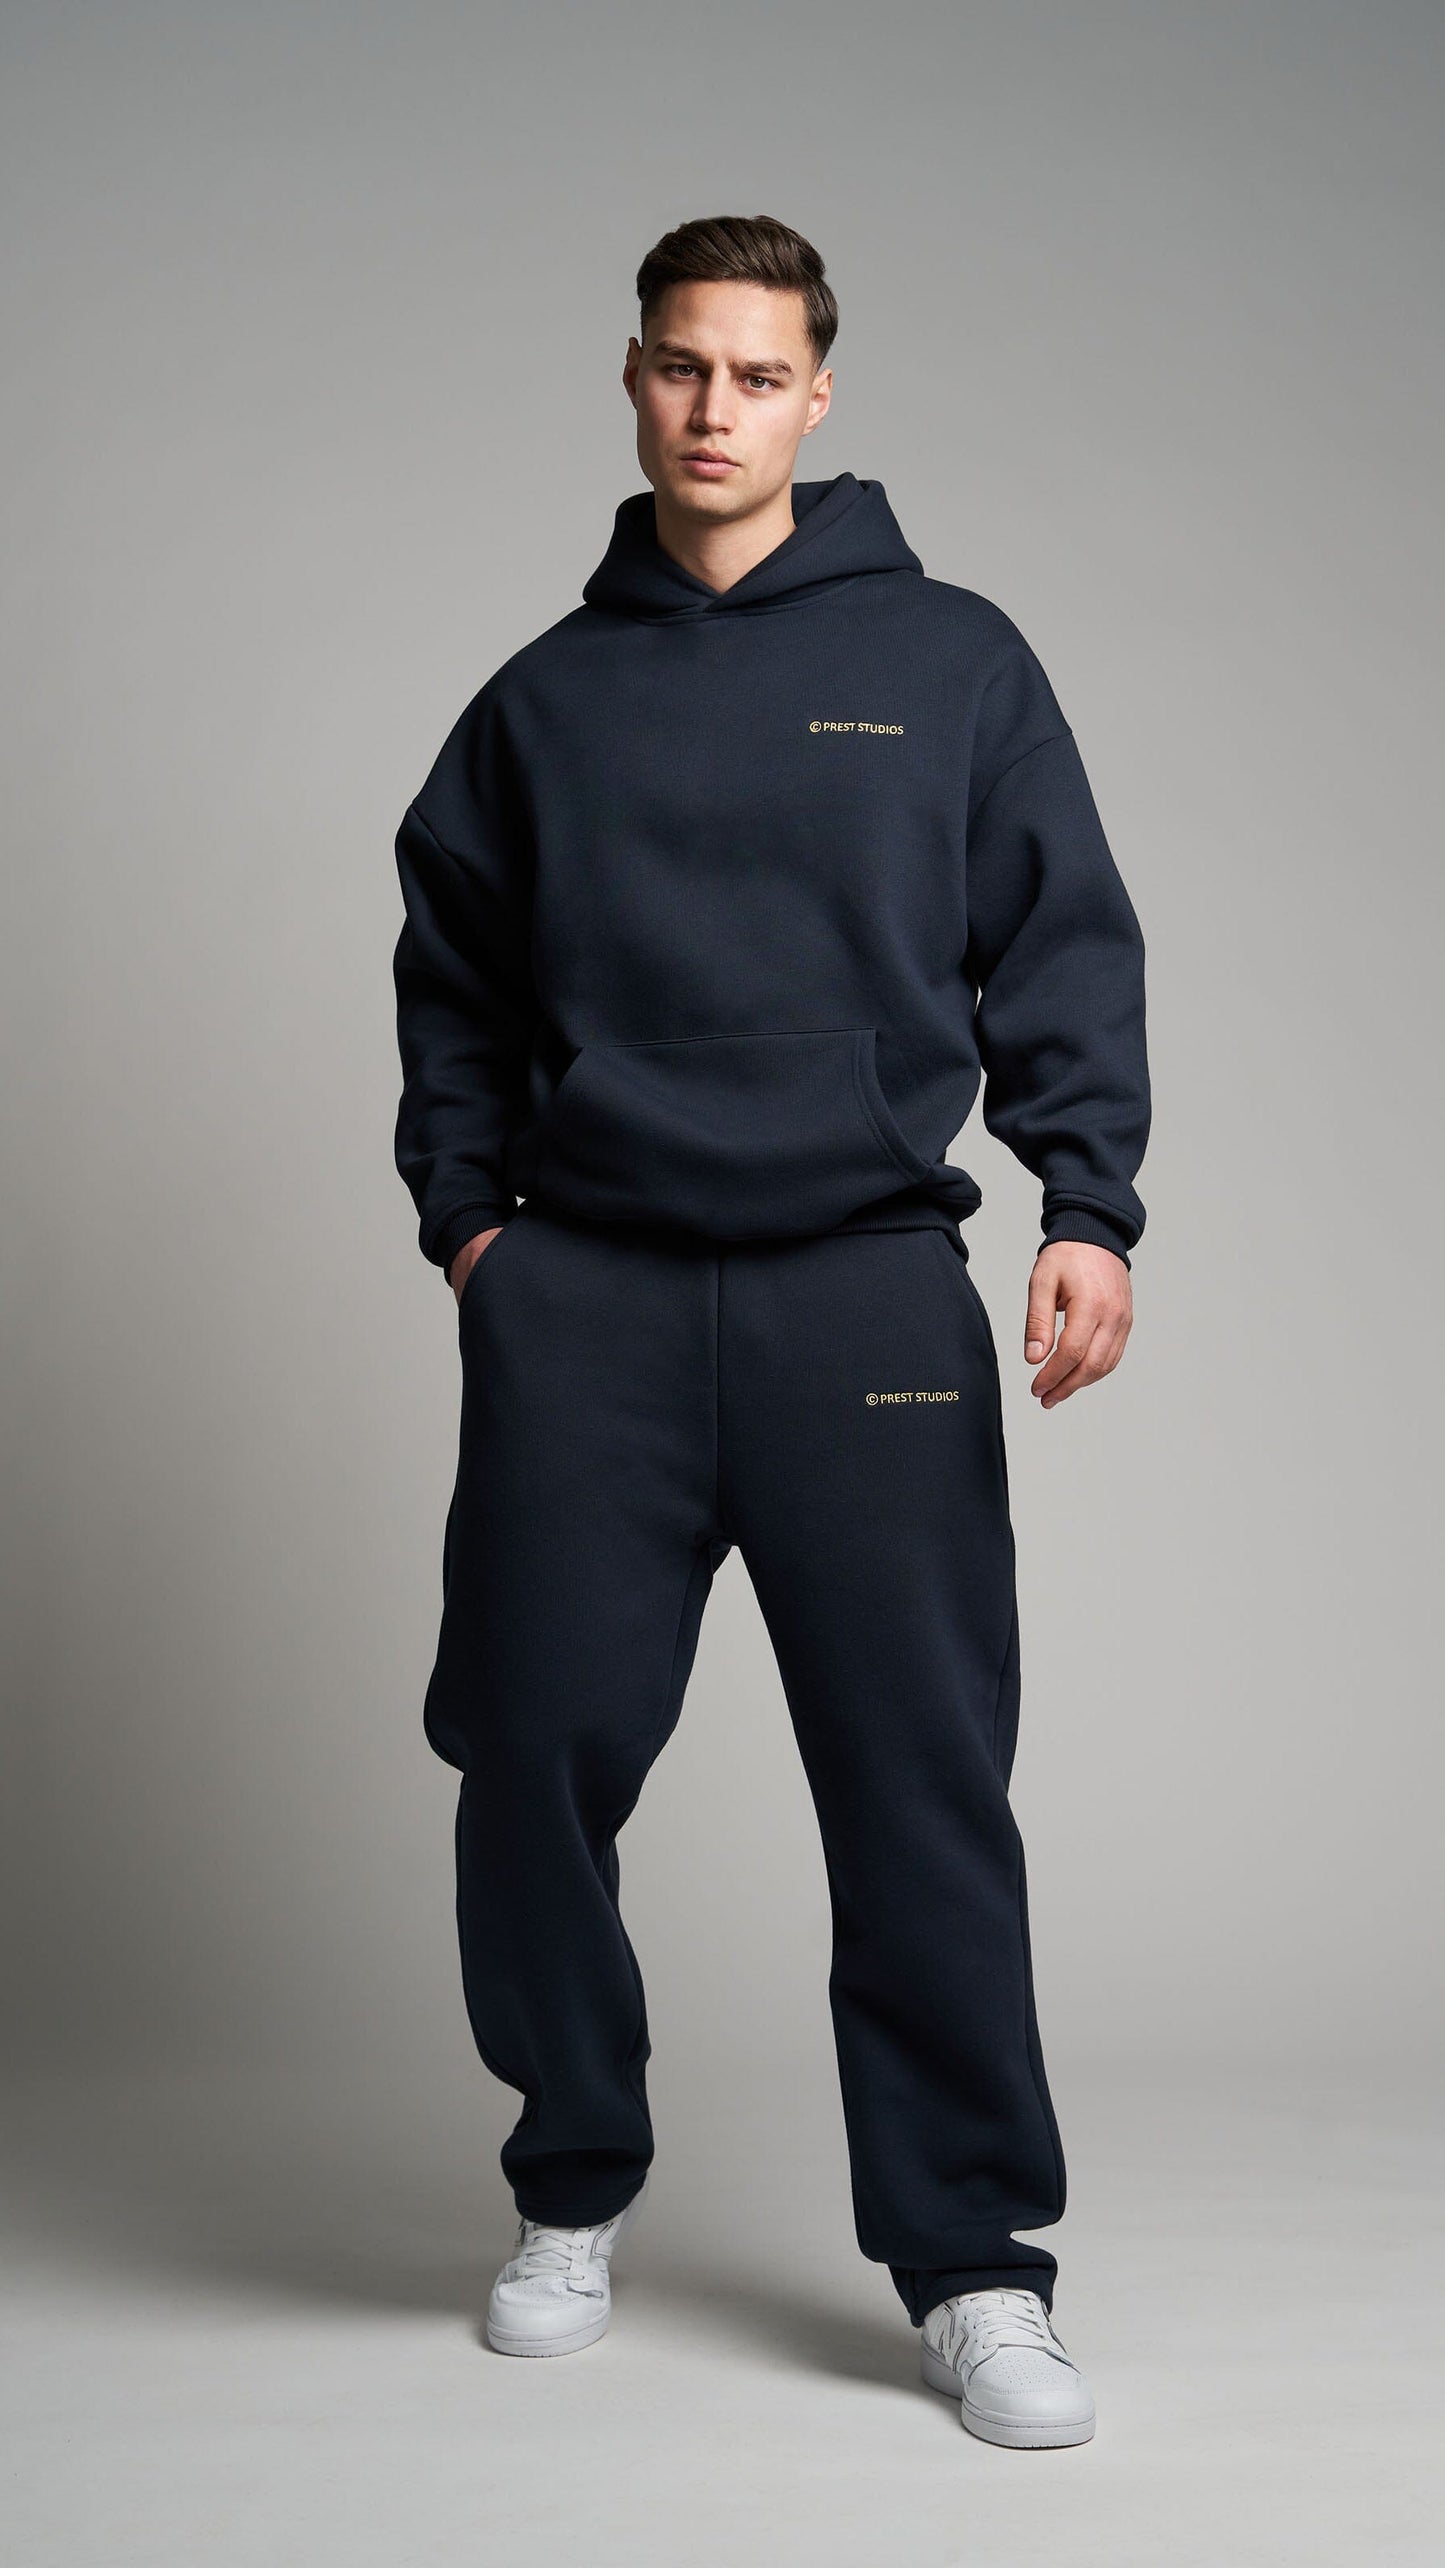 Navy Blue Jogginghose für Männer. Navy Blue Basic Jogginghose für Herren . Navy blue Tracksuit für Männer